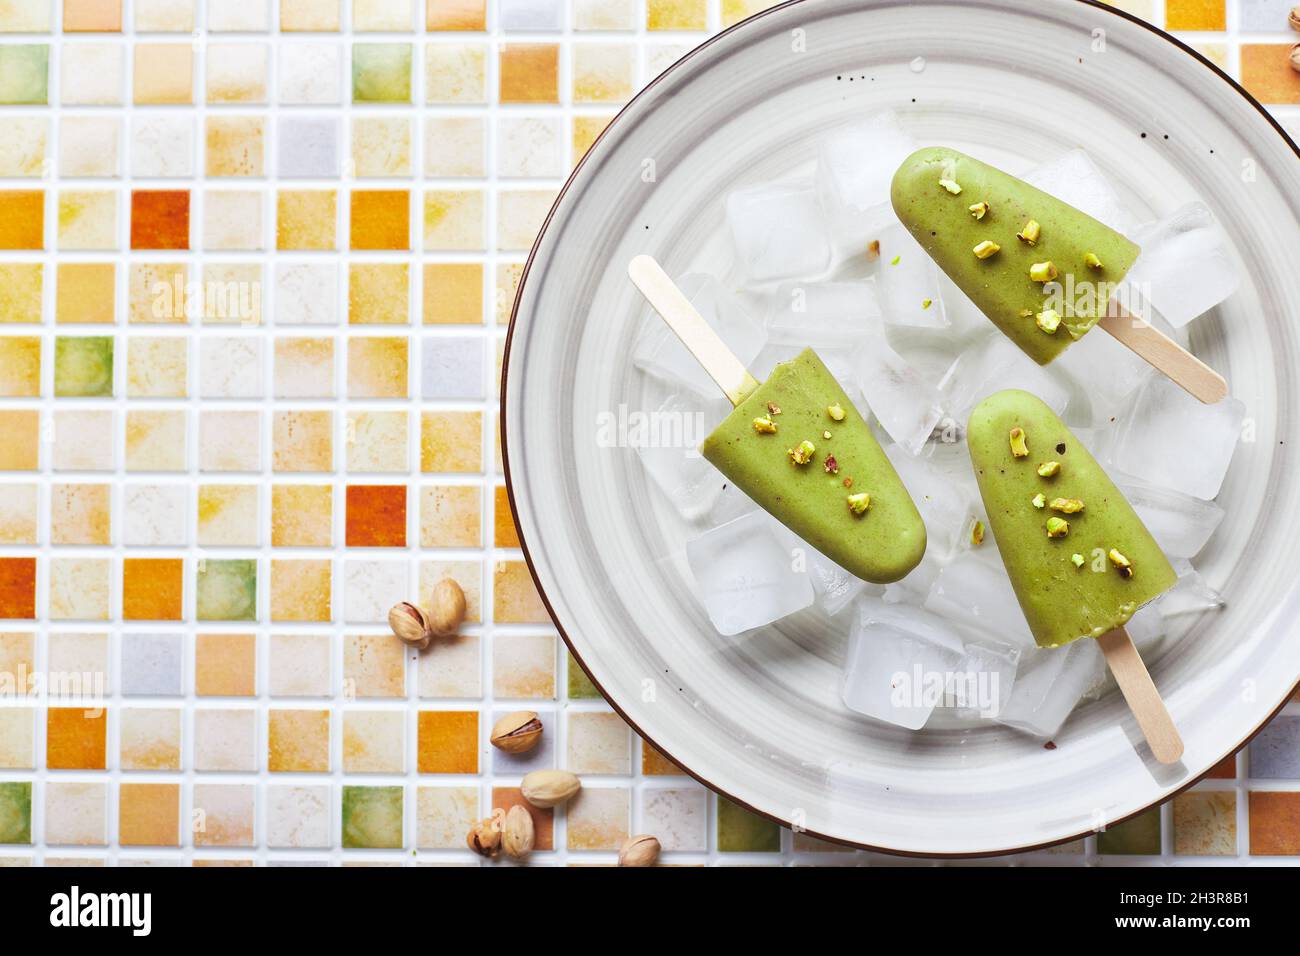 Gefrorener hausgemachter Pistazien-Popsicle in einer Schüssel mit Eis auf einem Tisch mit Mosaikfliesen. Erfrischender Fruchteis, gefrorener grüner Saft auf Stick. Oben vi Stockfoto